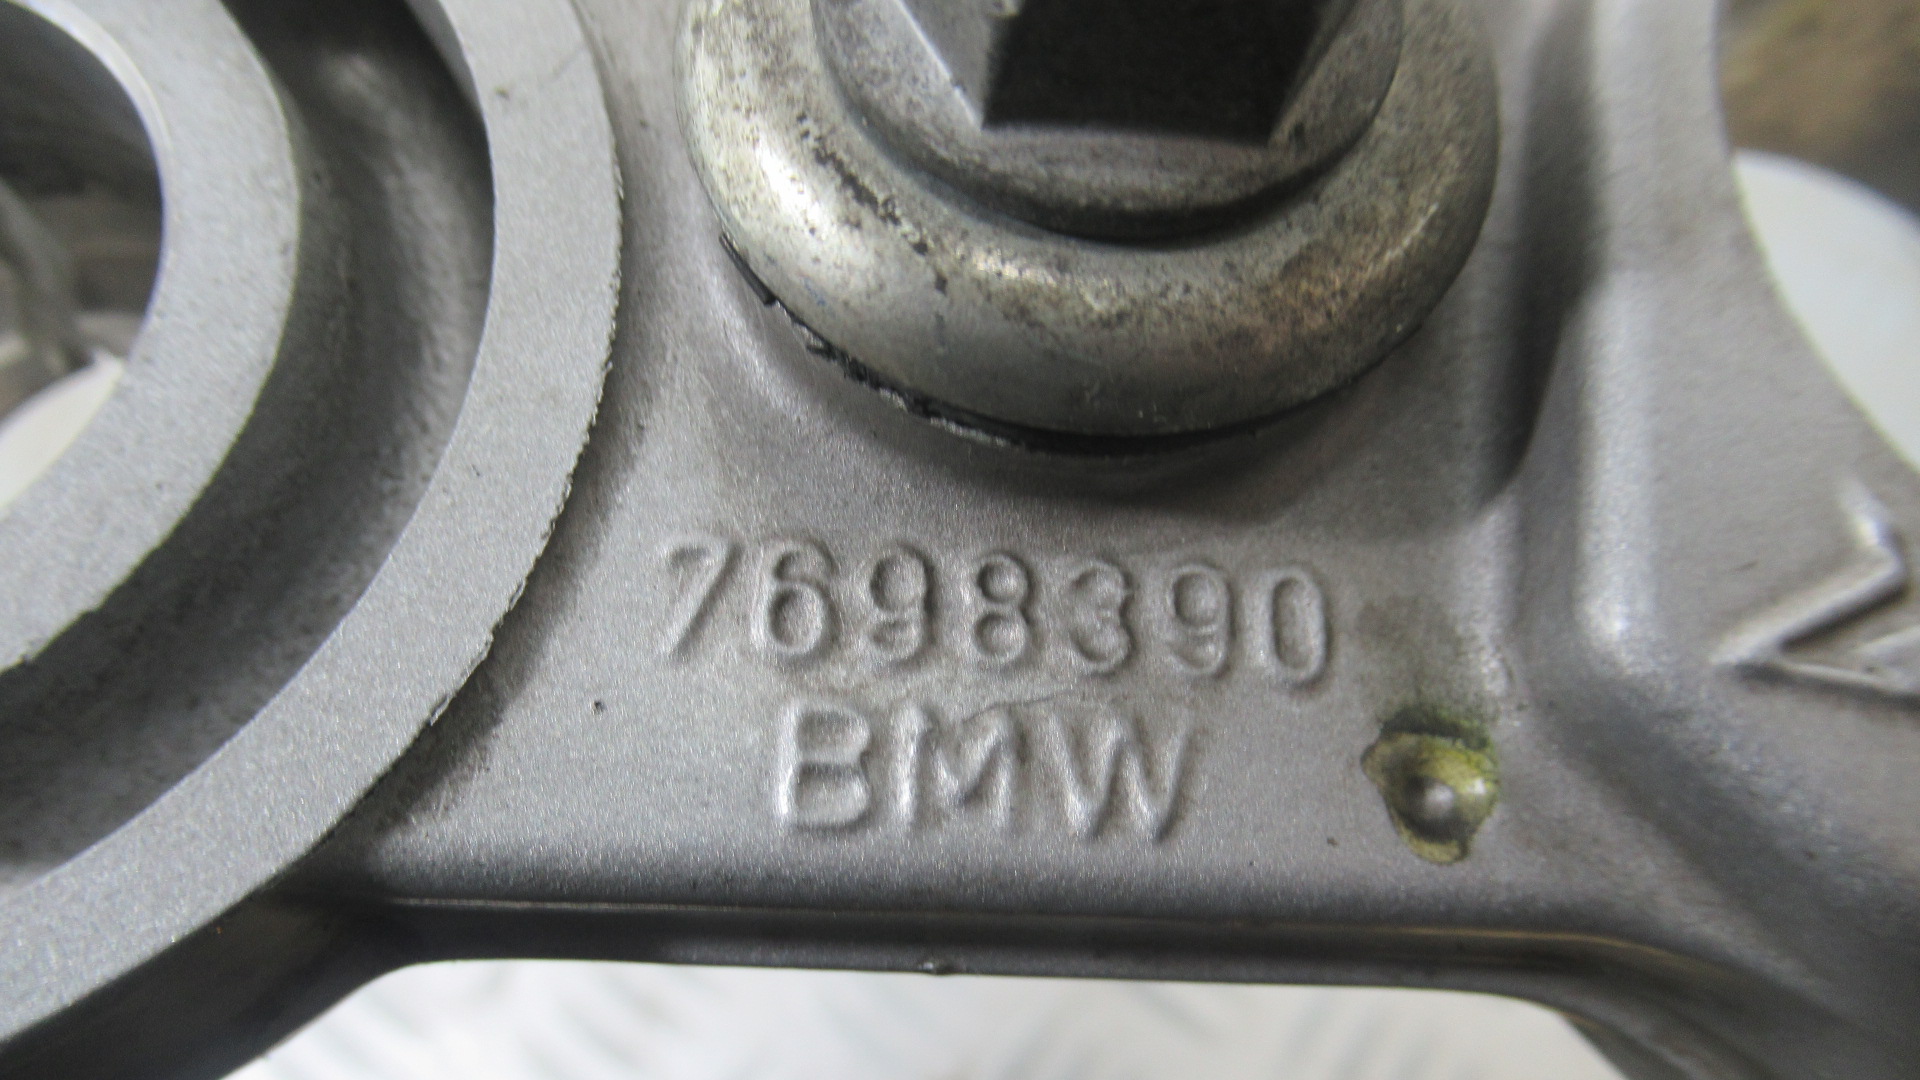 Tes fourche superieur BMW F 650 GS 4t (7698390)